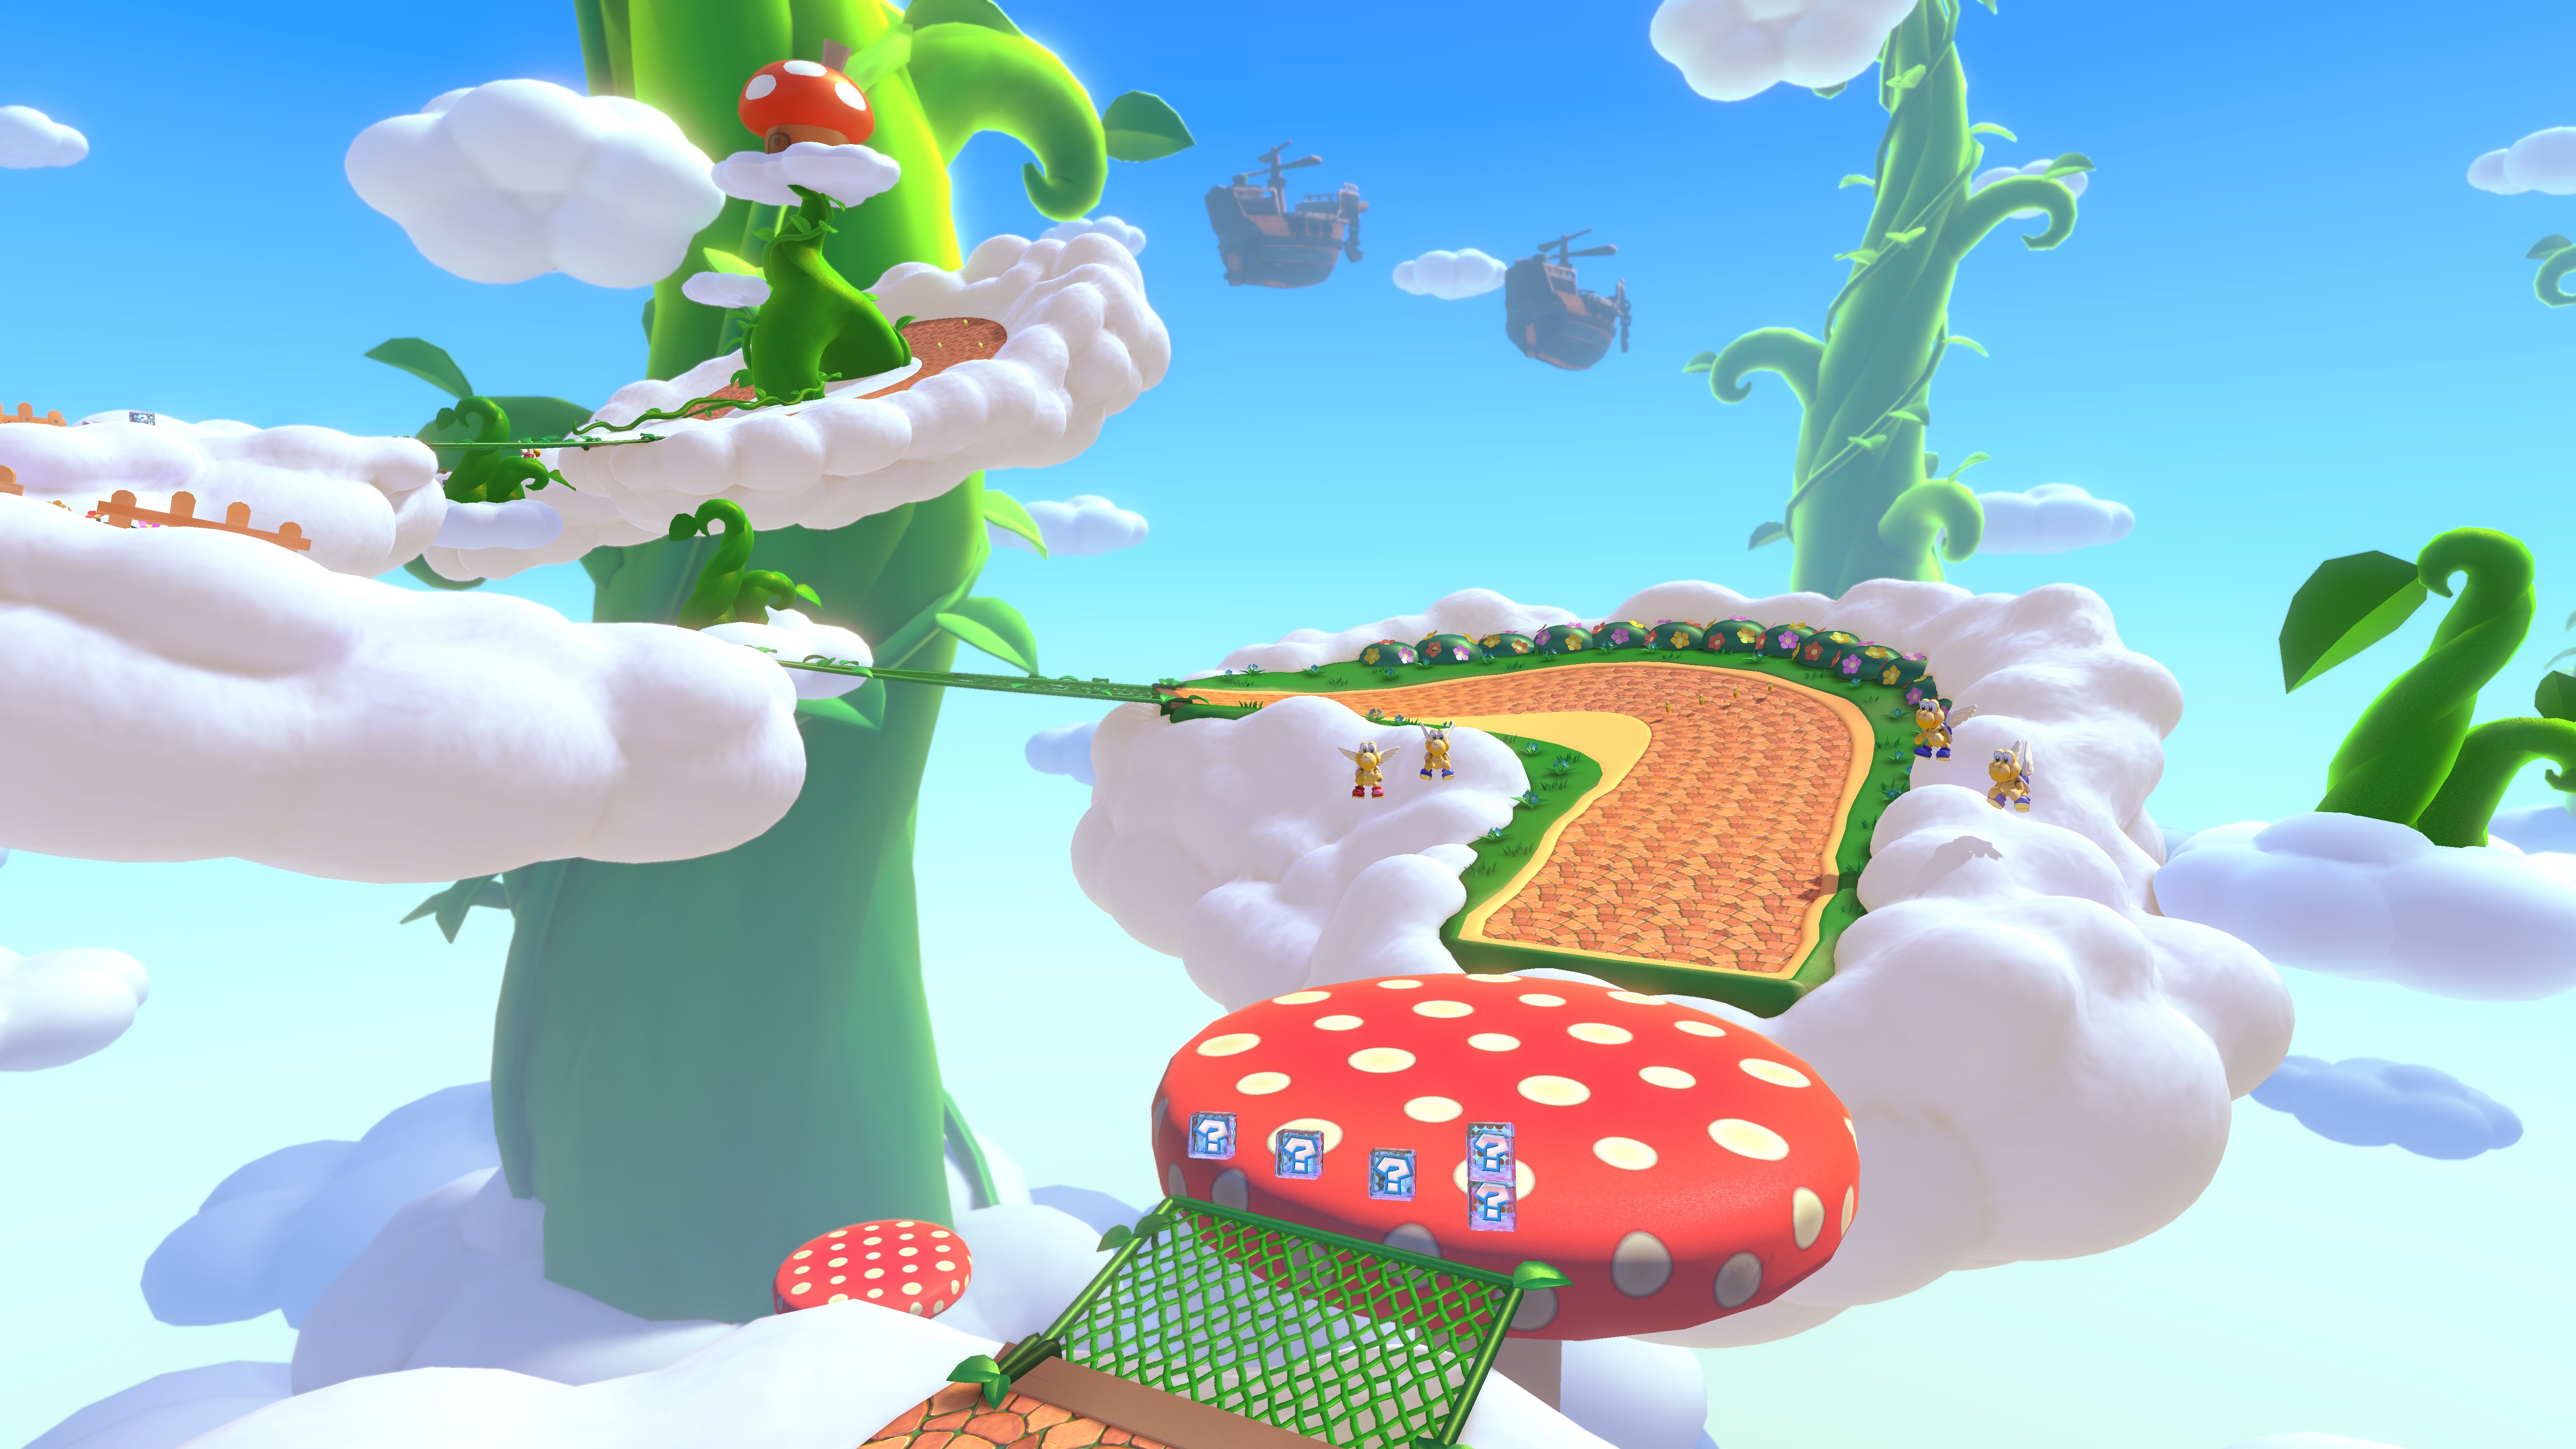 GBA Sky Garden as it appears in Mario Kart 8 Deluxe